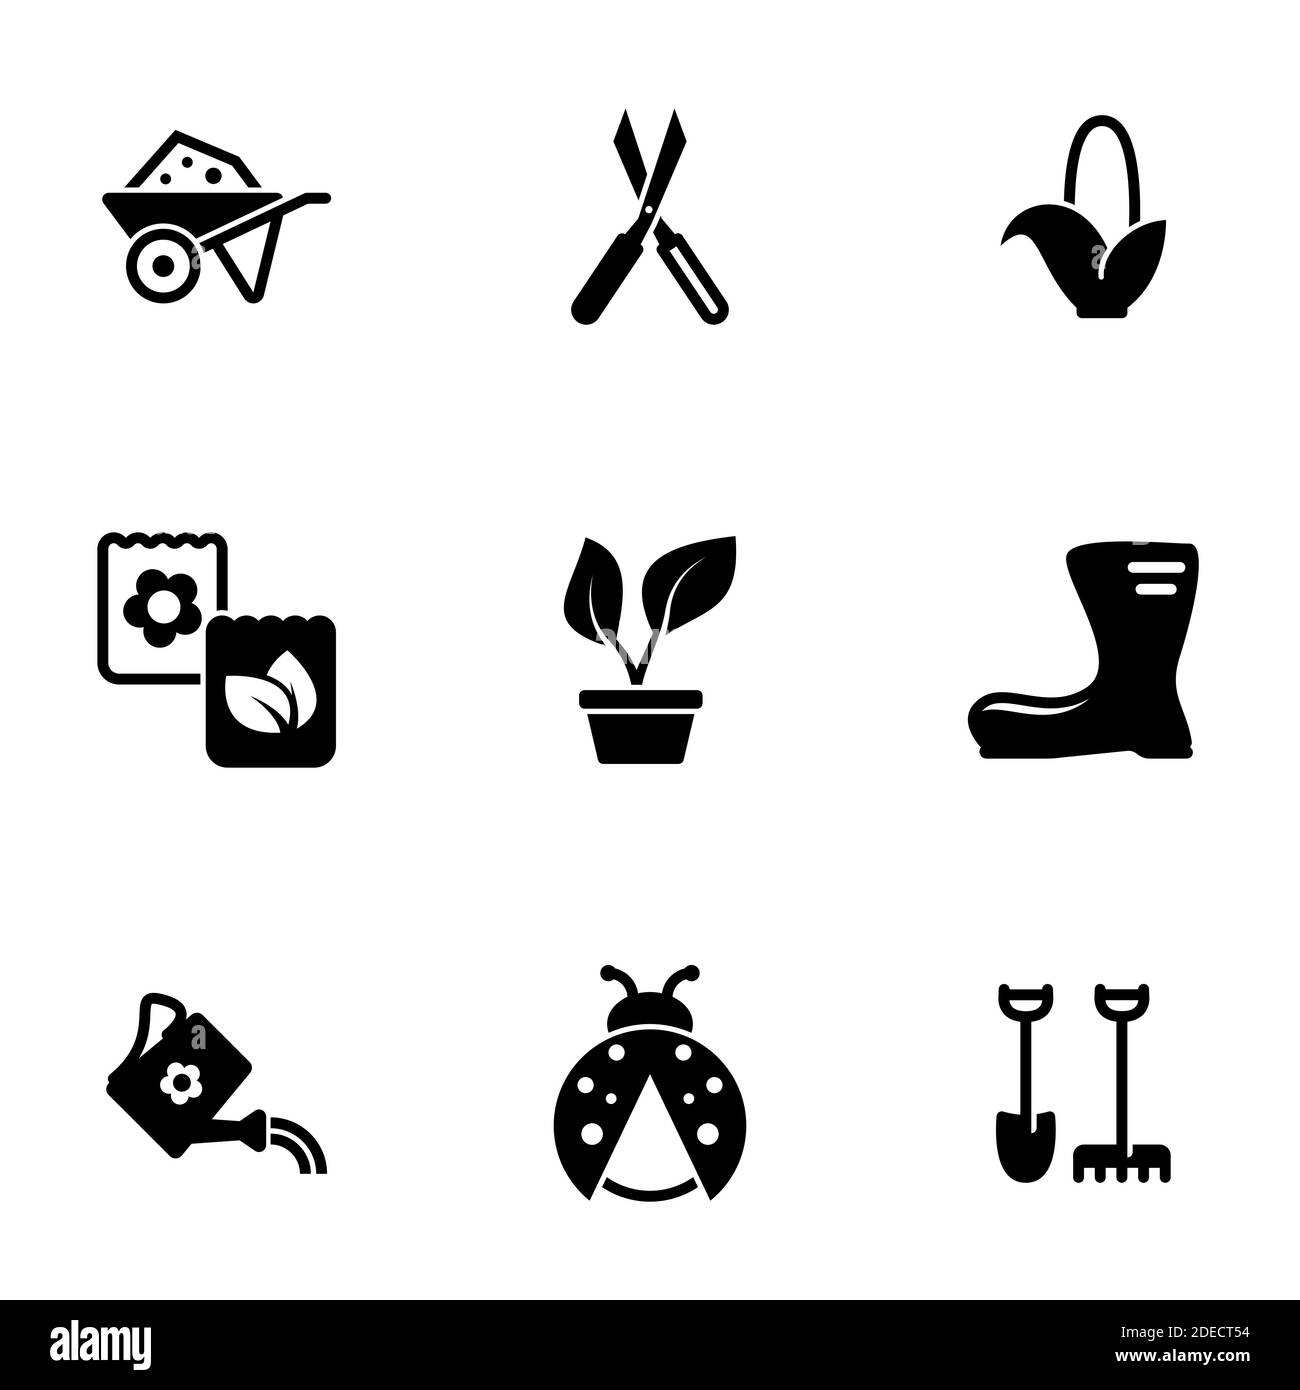 Set of simple icons on a theme Garden, garden, farming, vector, set. White background Stock Vector